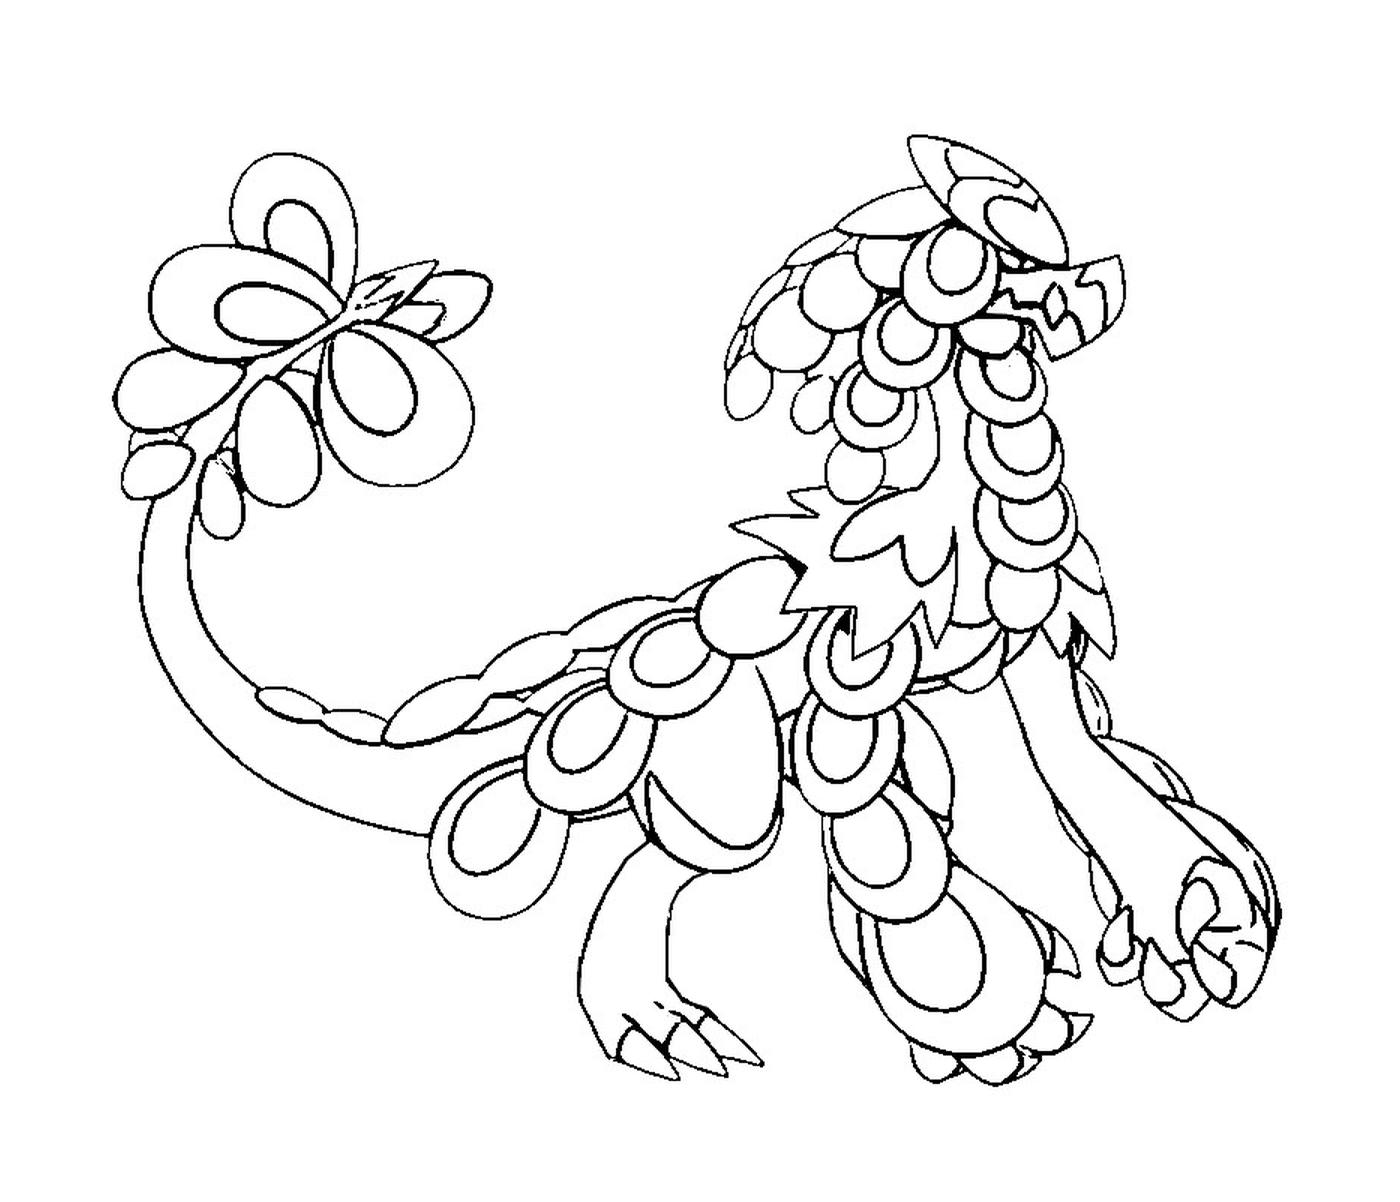  Экайзер, дракон с цветком на хвосте 